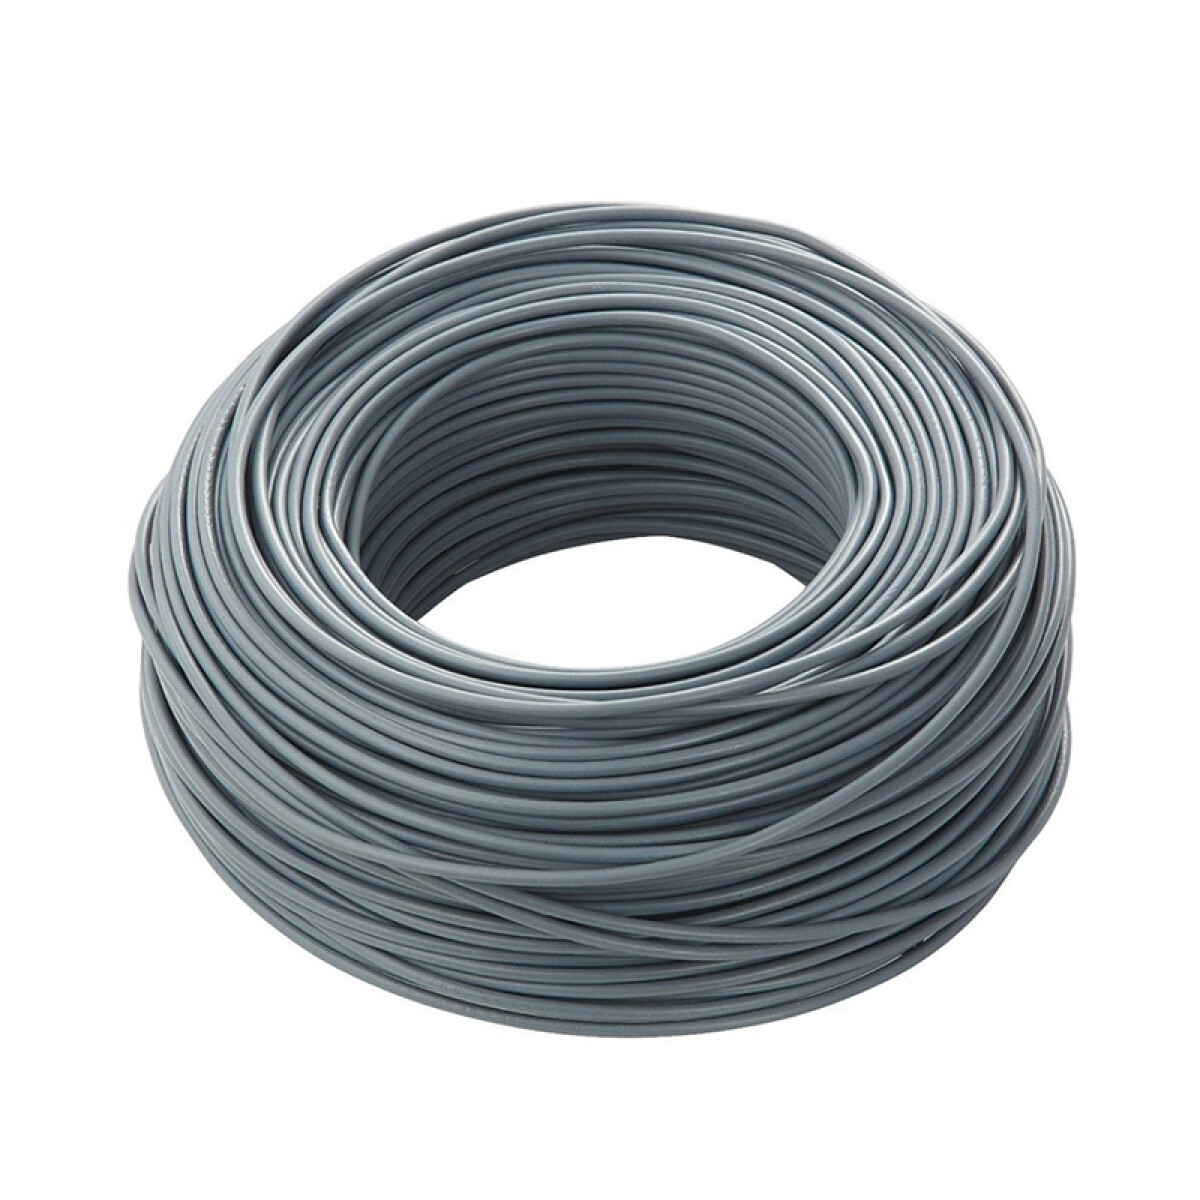 Cable bajo plástico flexible 3x4mm² - Rollo 100mt - C95330 